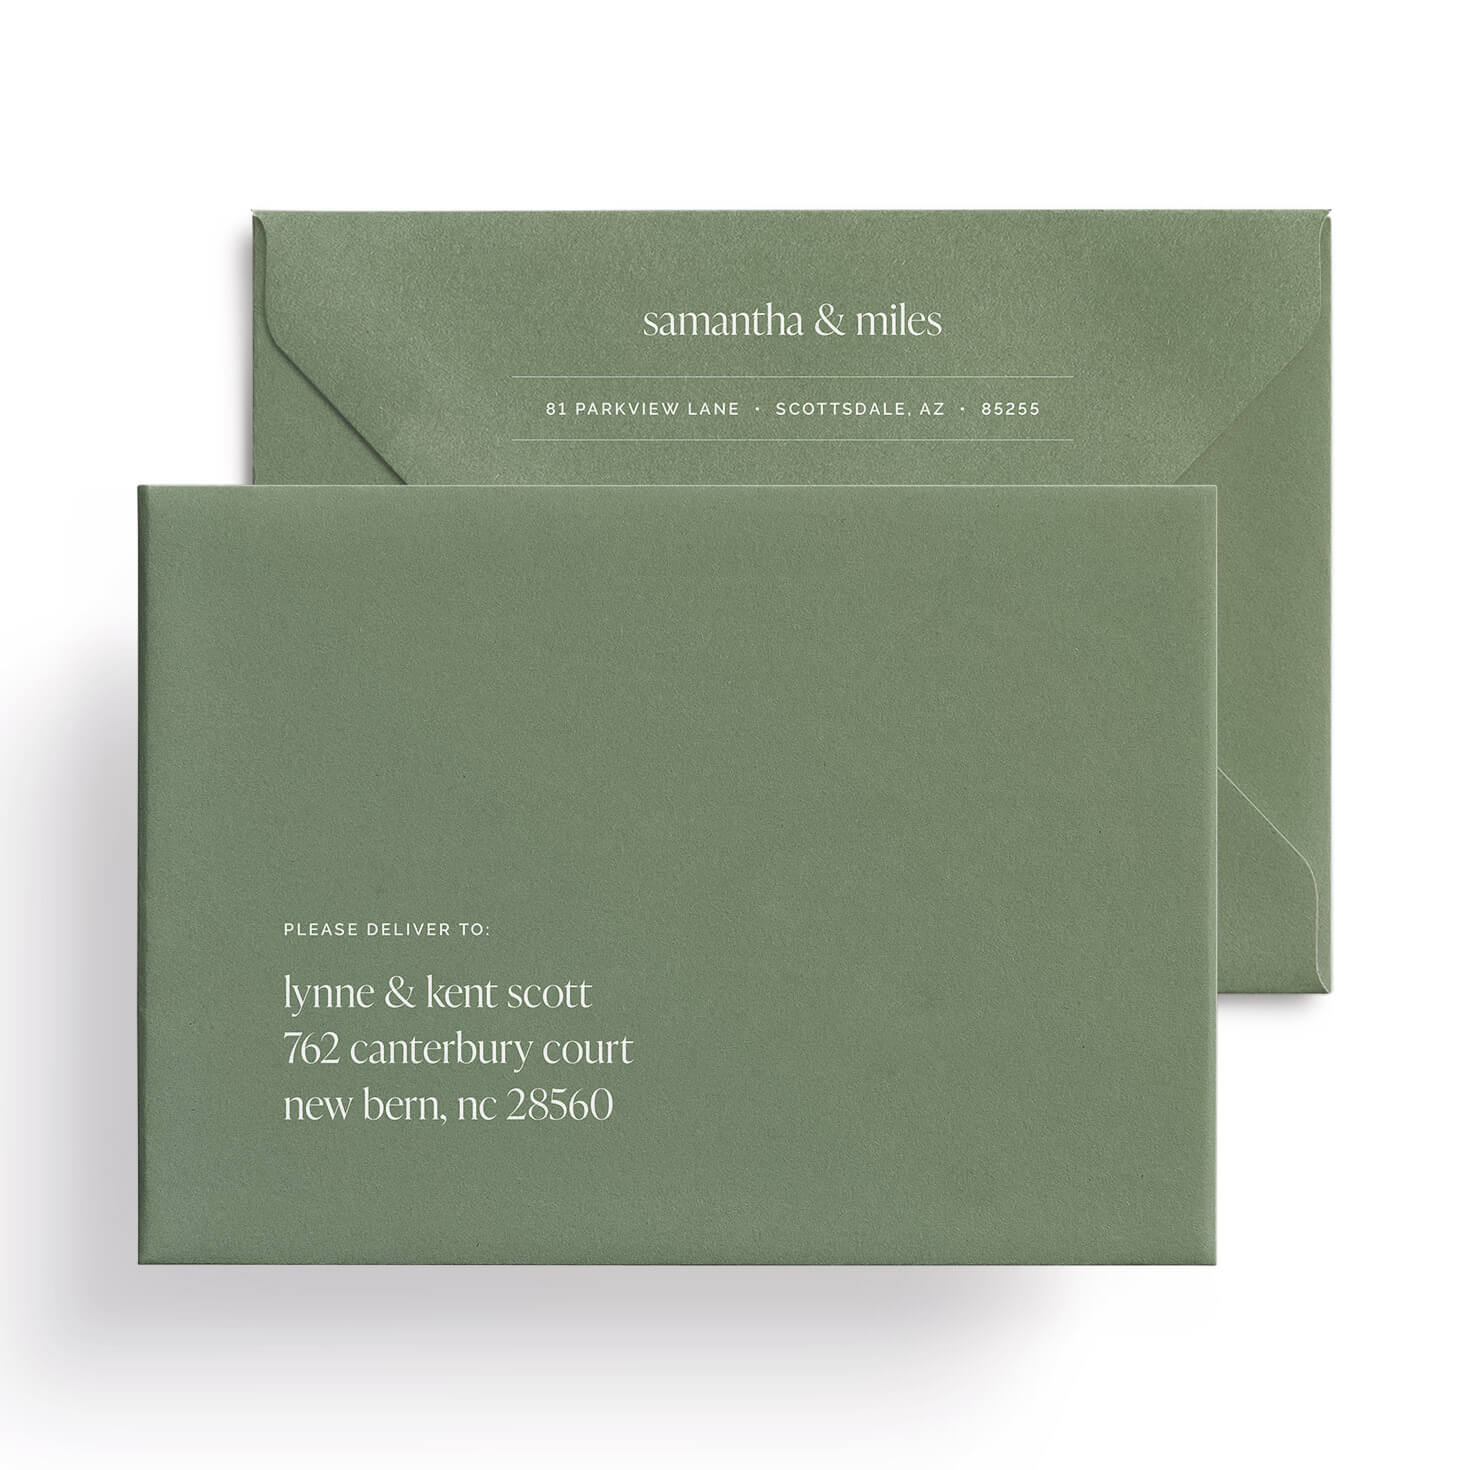 Digital address printing for wedding invitations inspired by Scottsdale, Arizona.